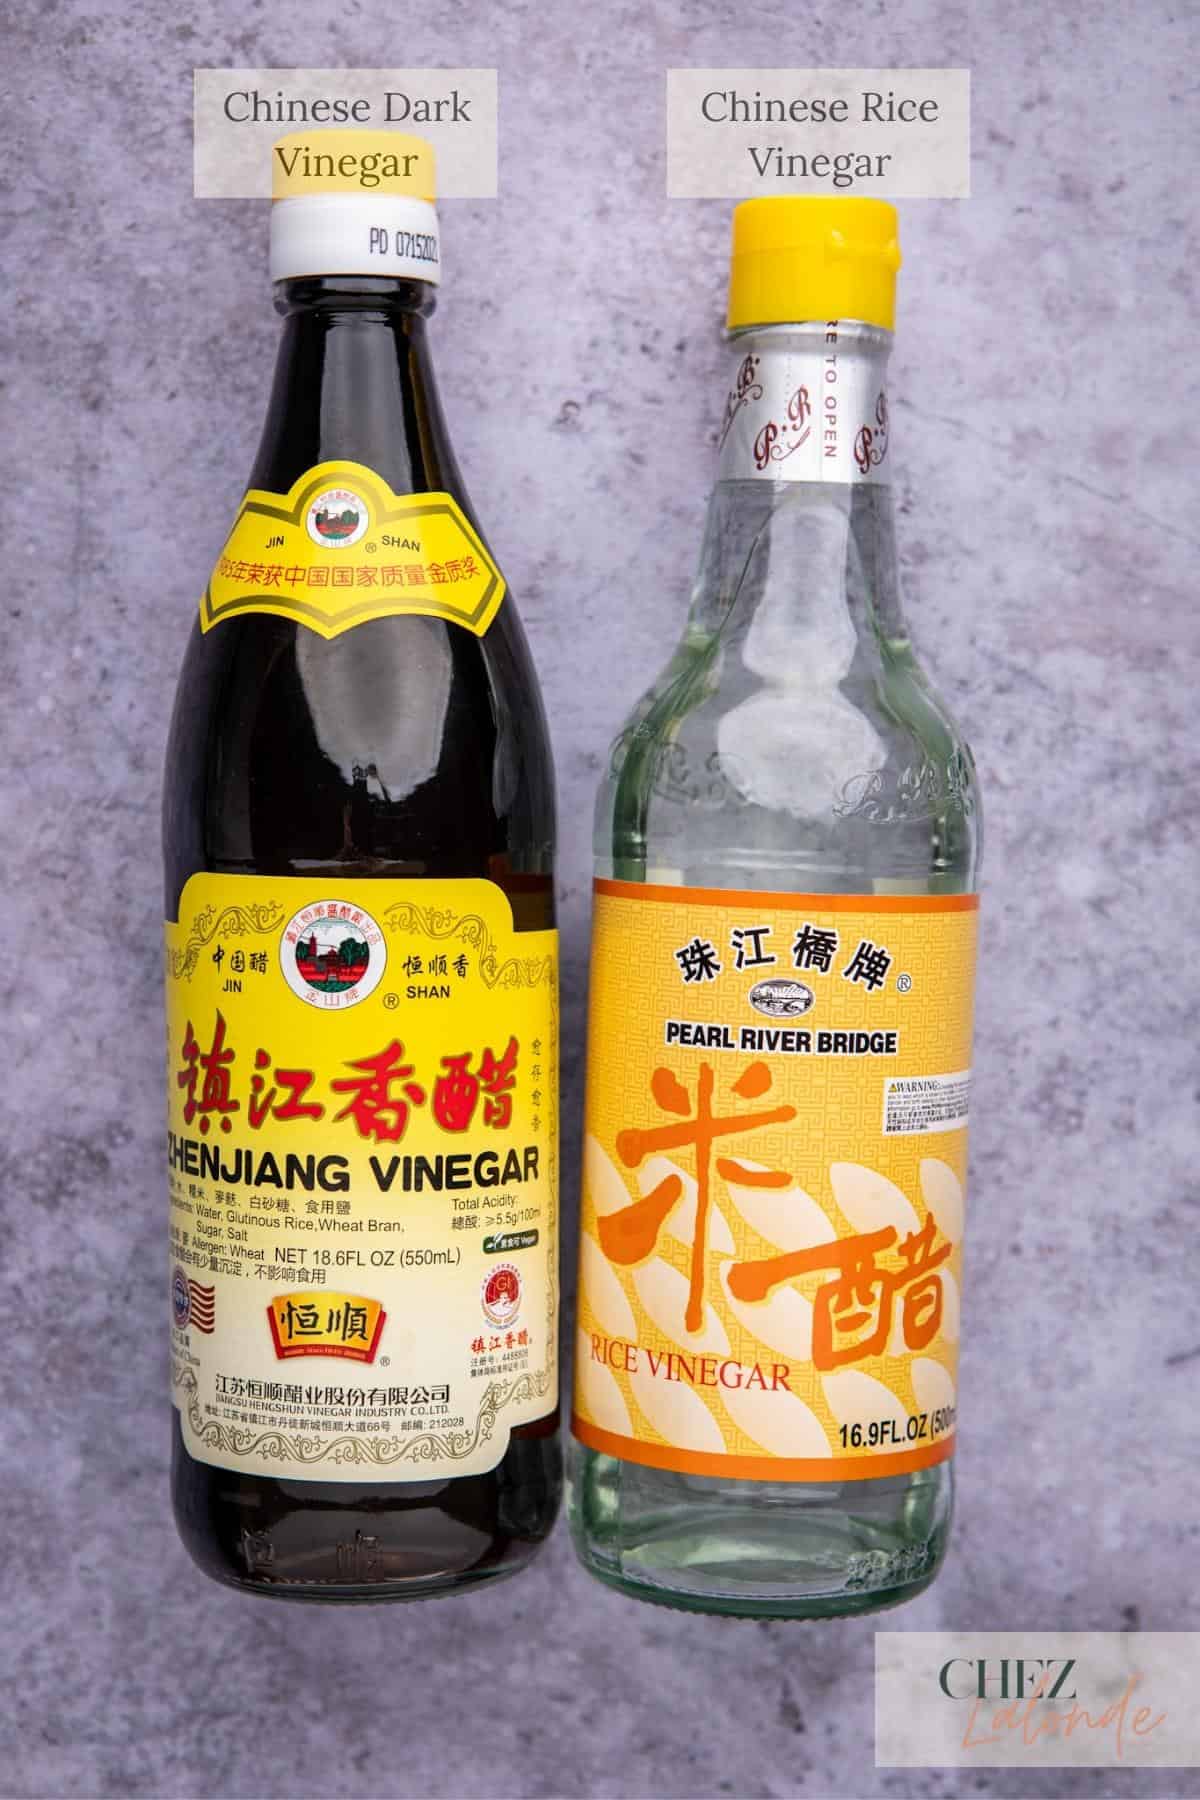 A bottle of Chinese dark vinegar on the left and a bottle of Chinese Rice Vinegar on the right. 